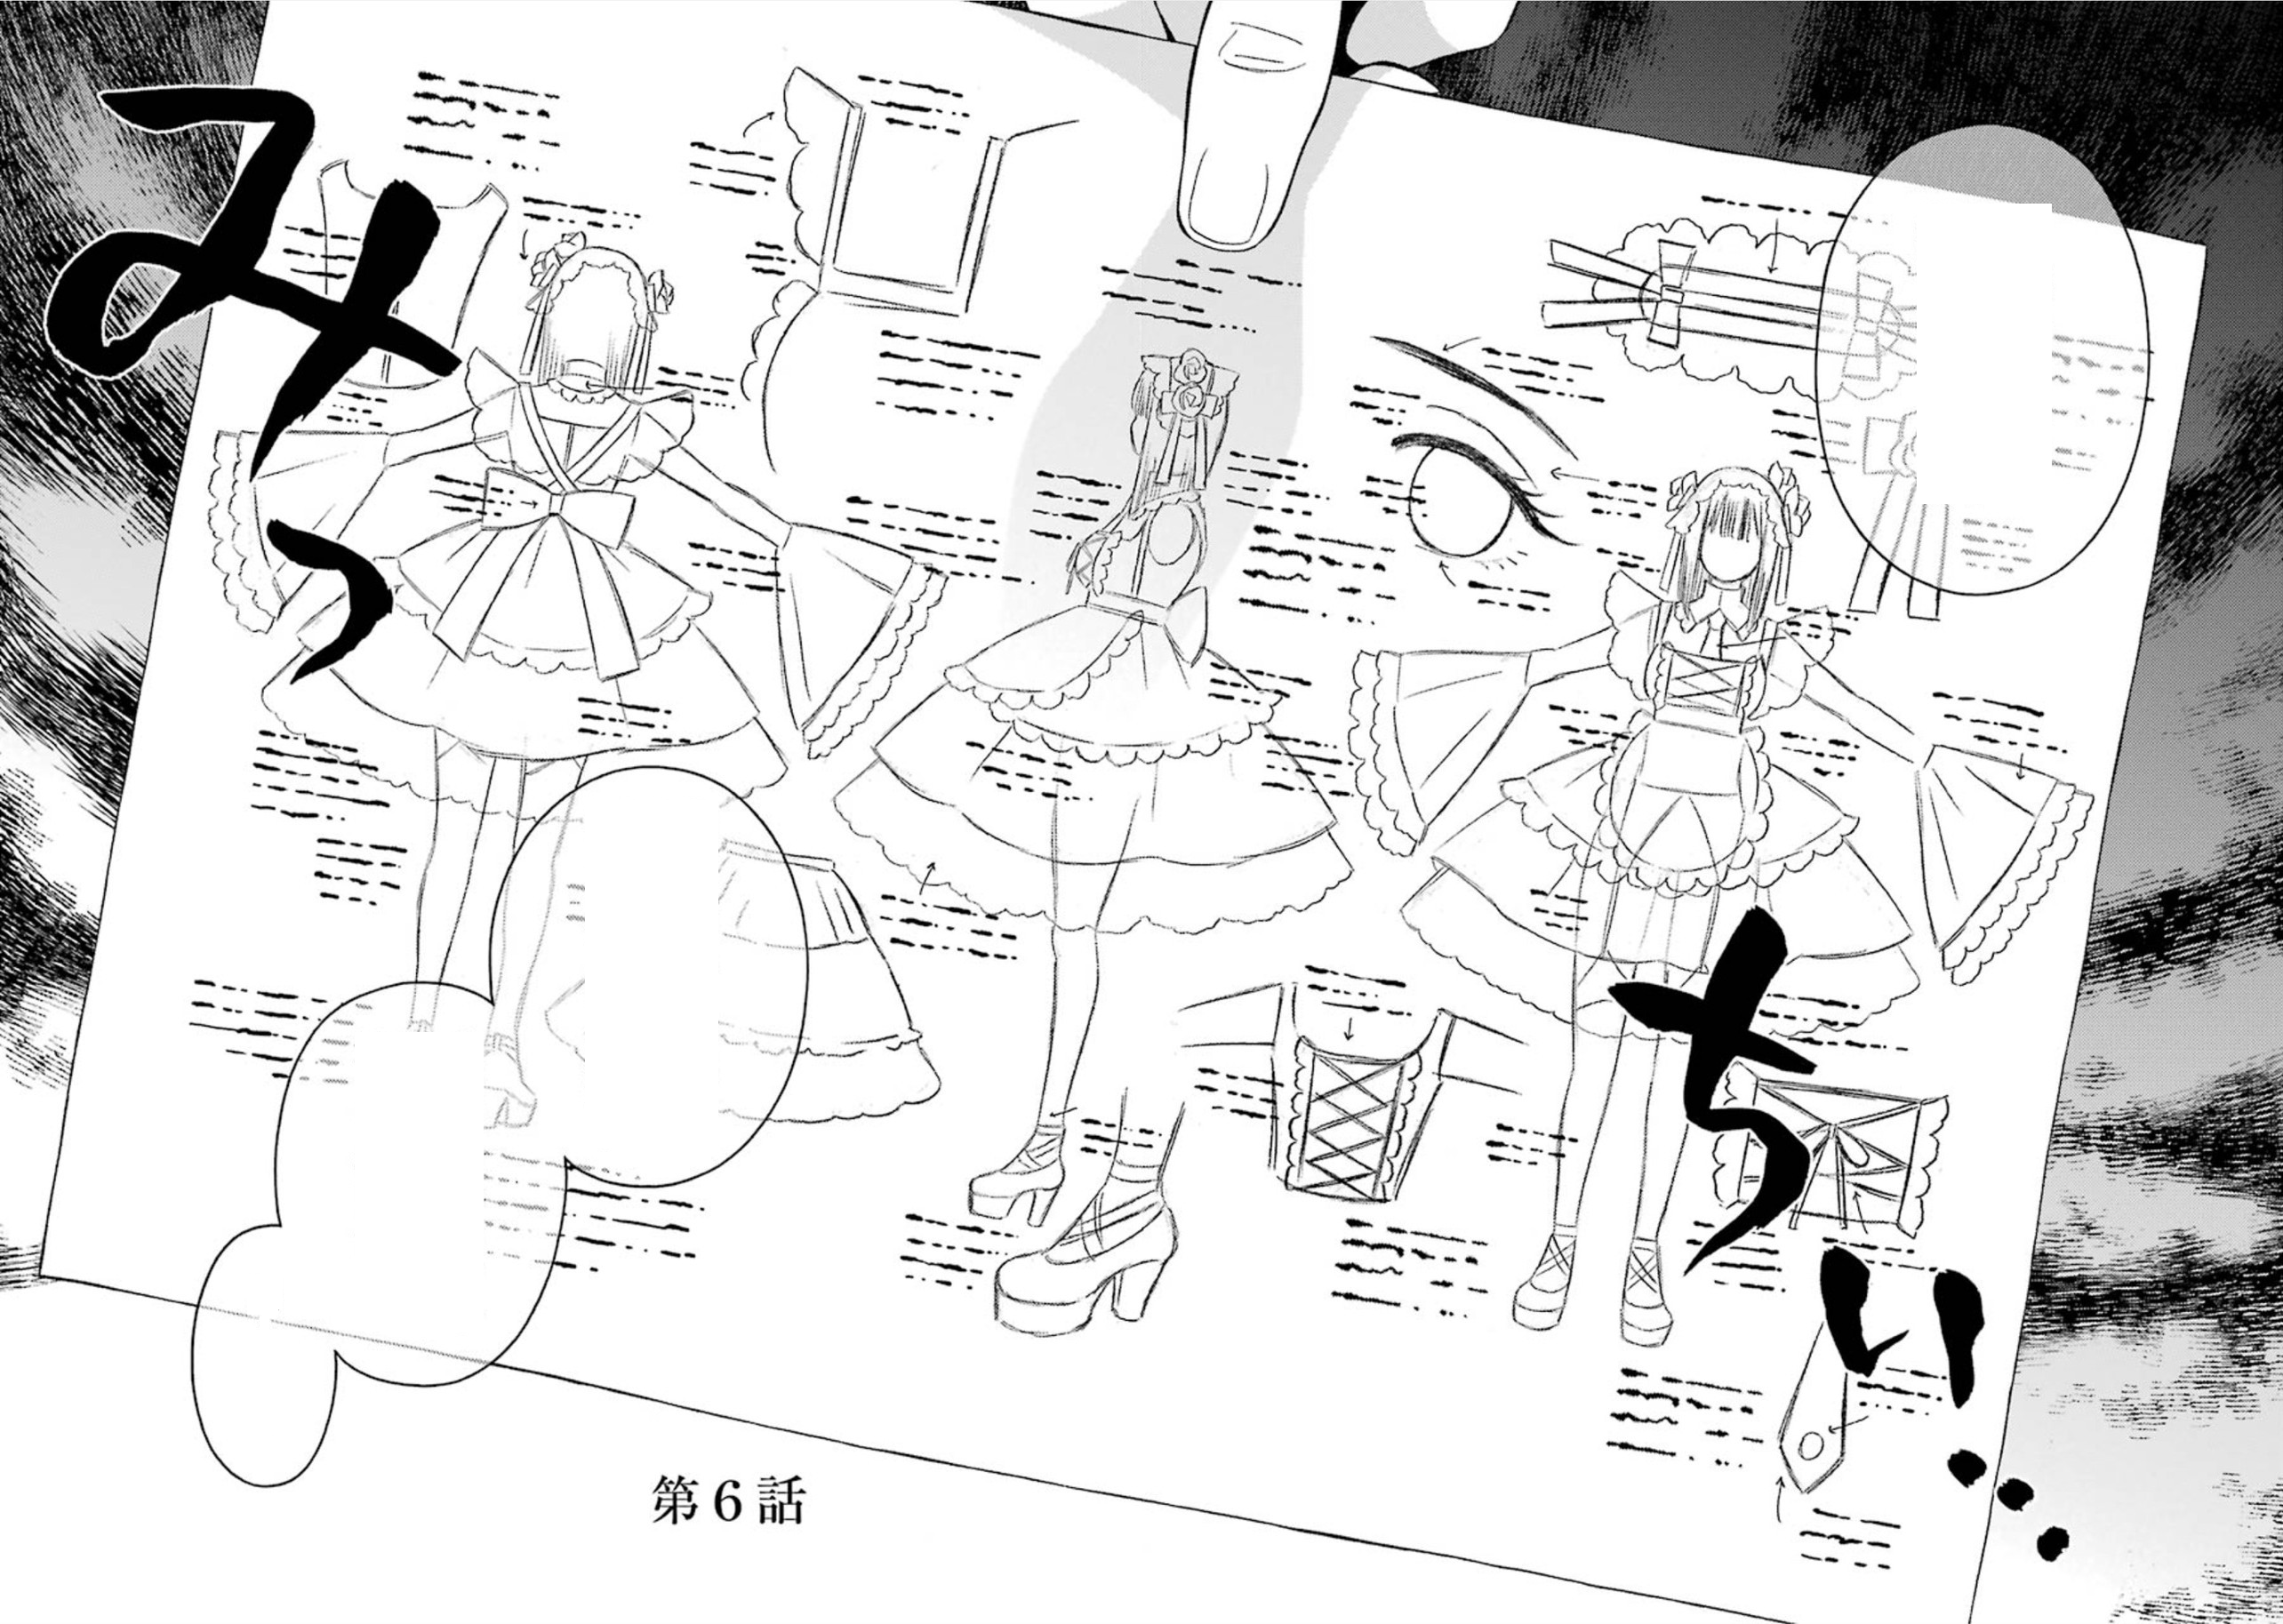 Sono Bisque Doll wa Koi wo Suru Capítulo 84 - Manga Online